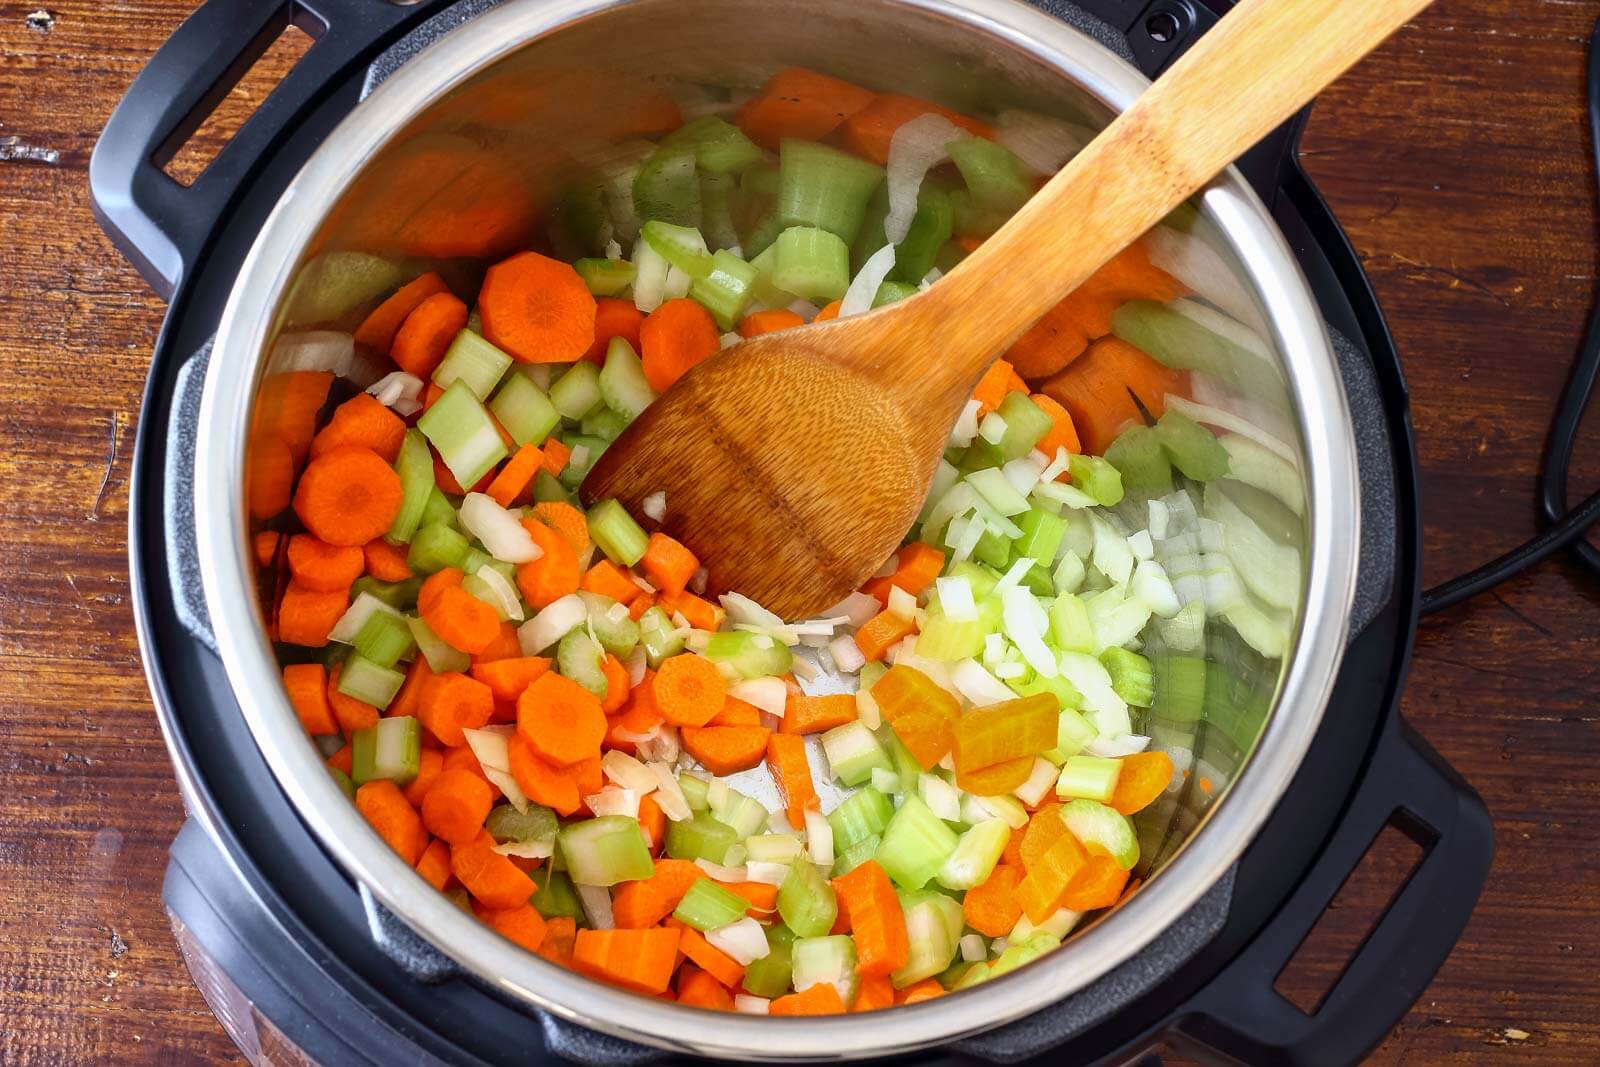 instant pot with vegetables sautéing